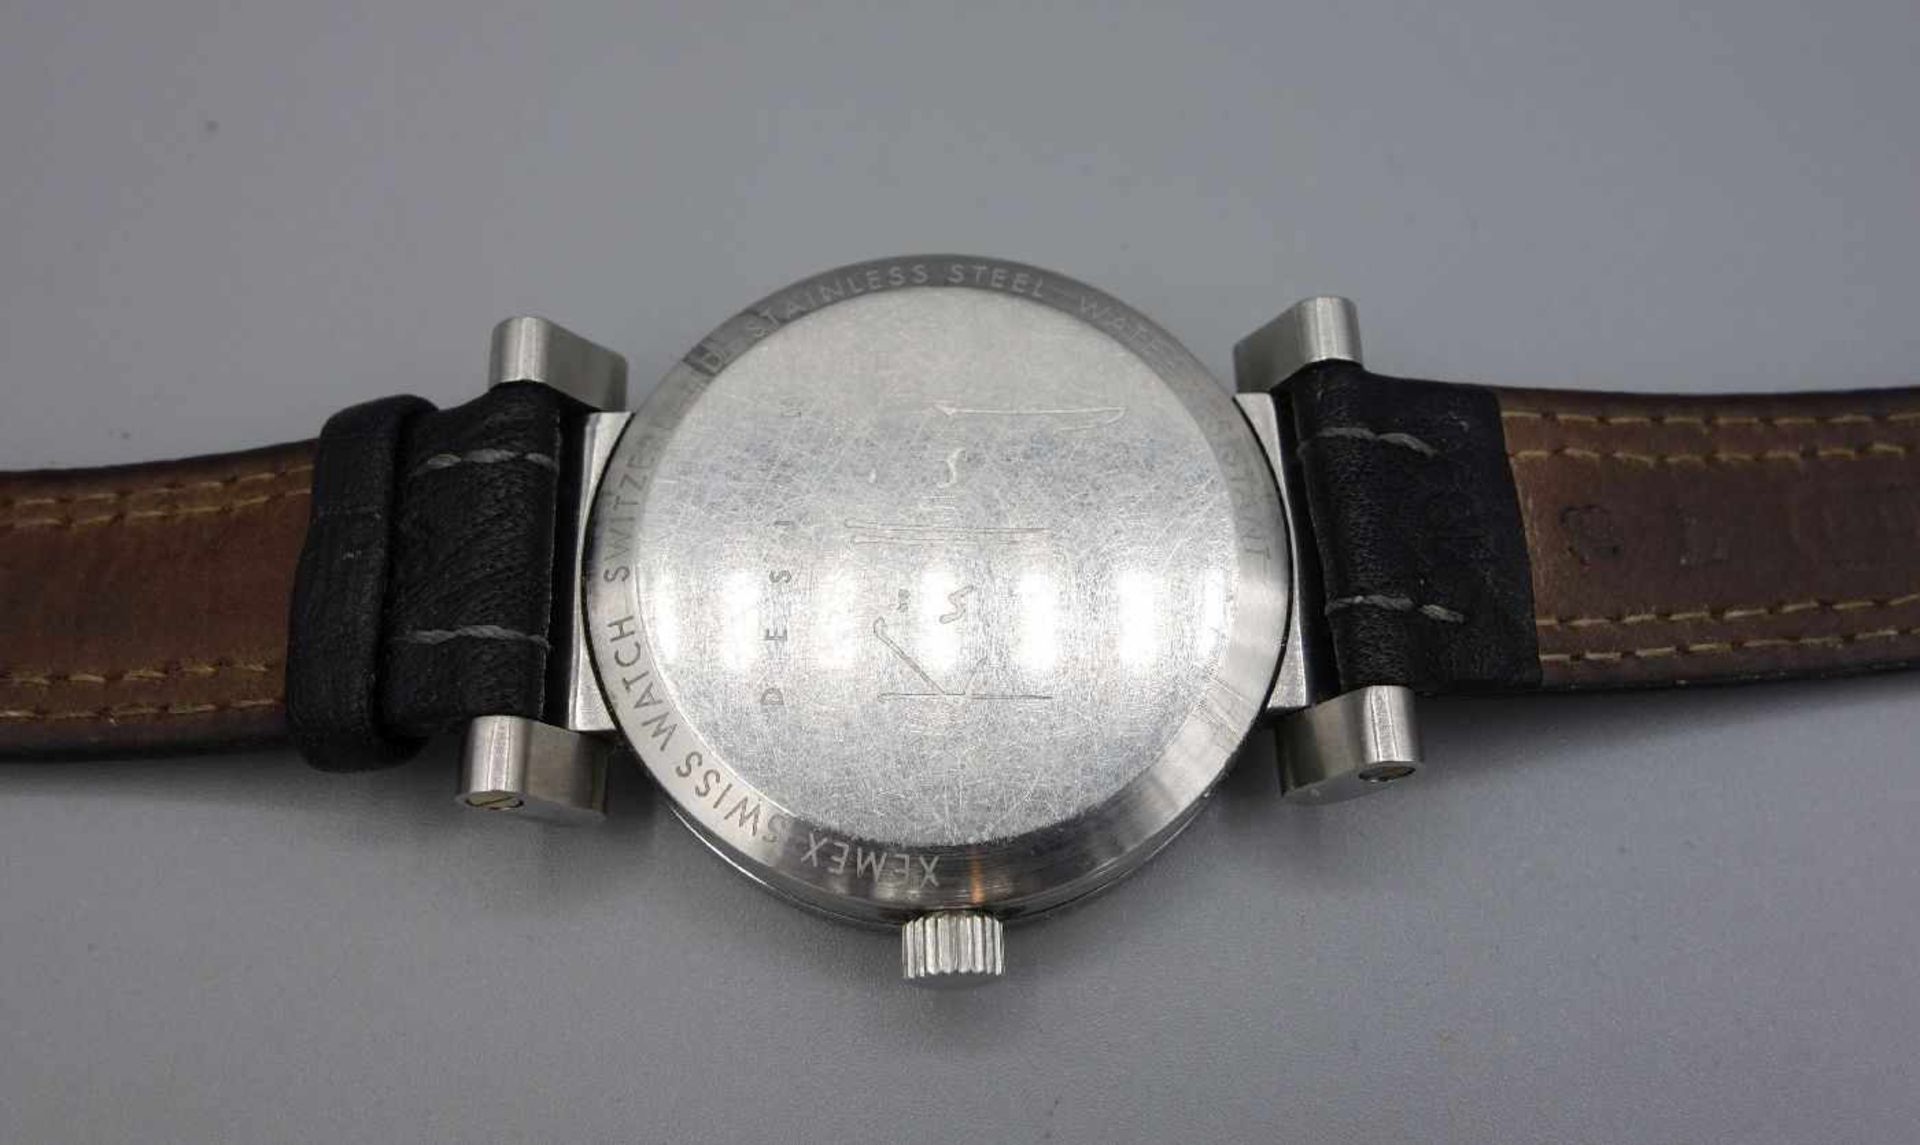 ARMBANDUHR - XEMEX OFFROAD / wristwatch, Quarz, Schweiz. Rundes Edelstahlgehäuse an schwarzem - Bild 6 aus 7